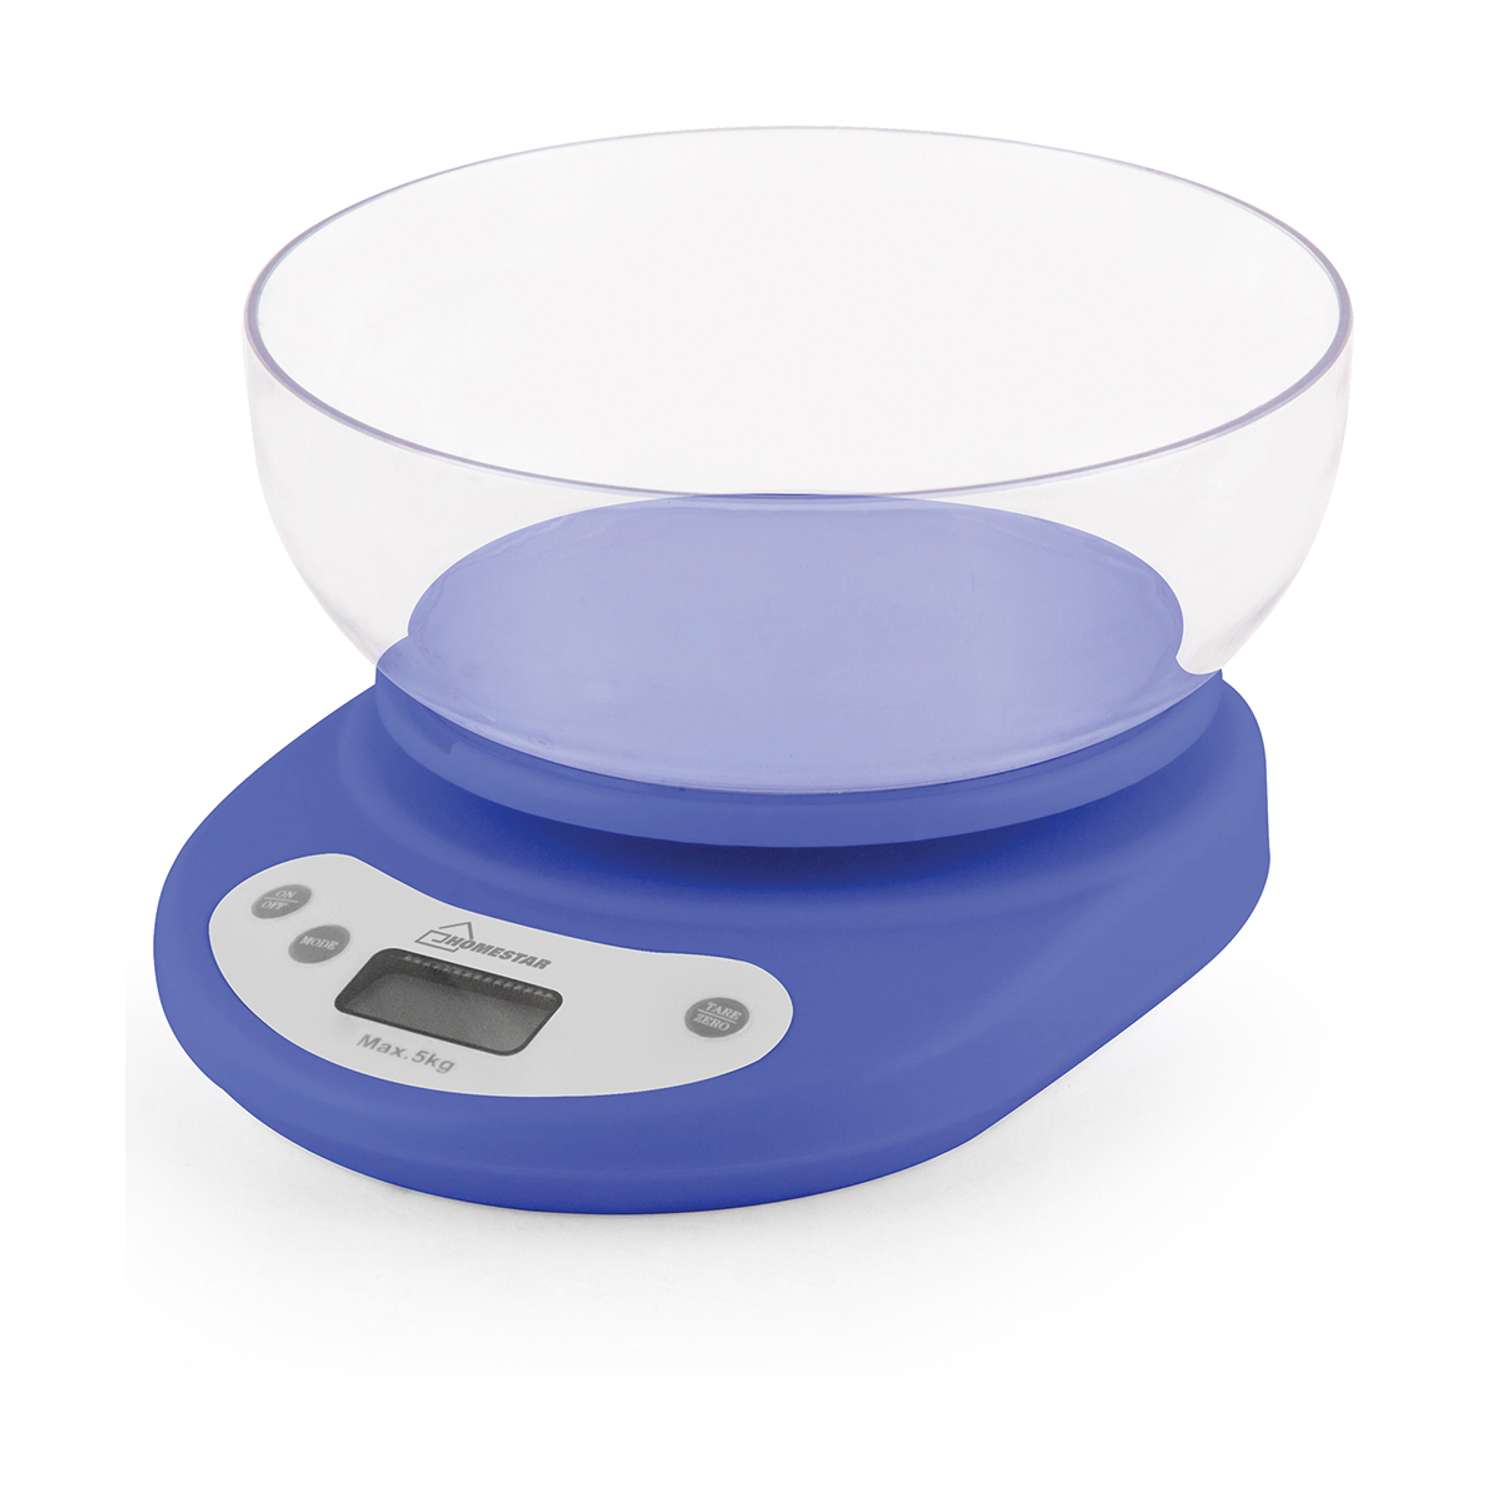 Весы кухонные электронные Homestar HS-3001 до 5 кг голубые - фото 1